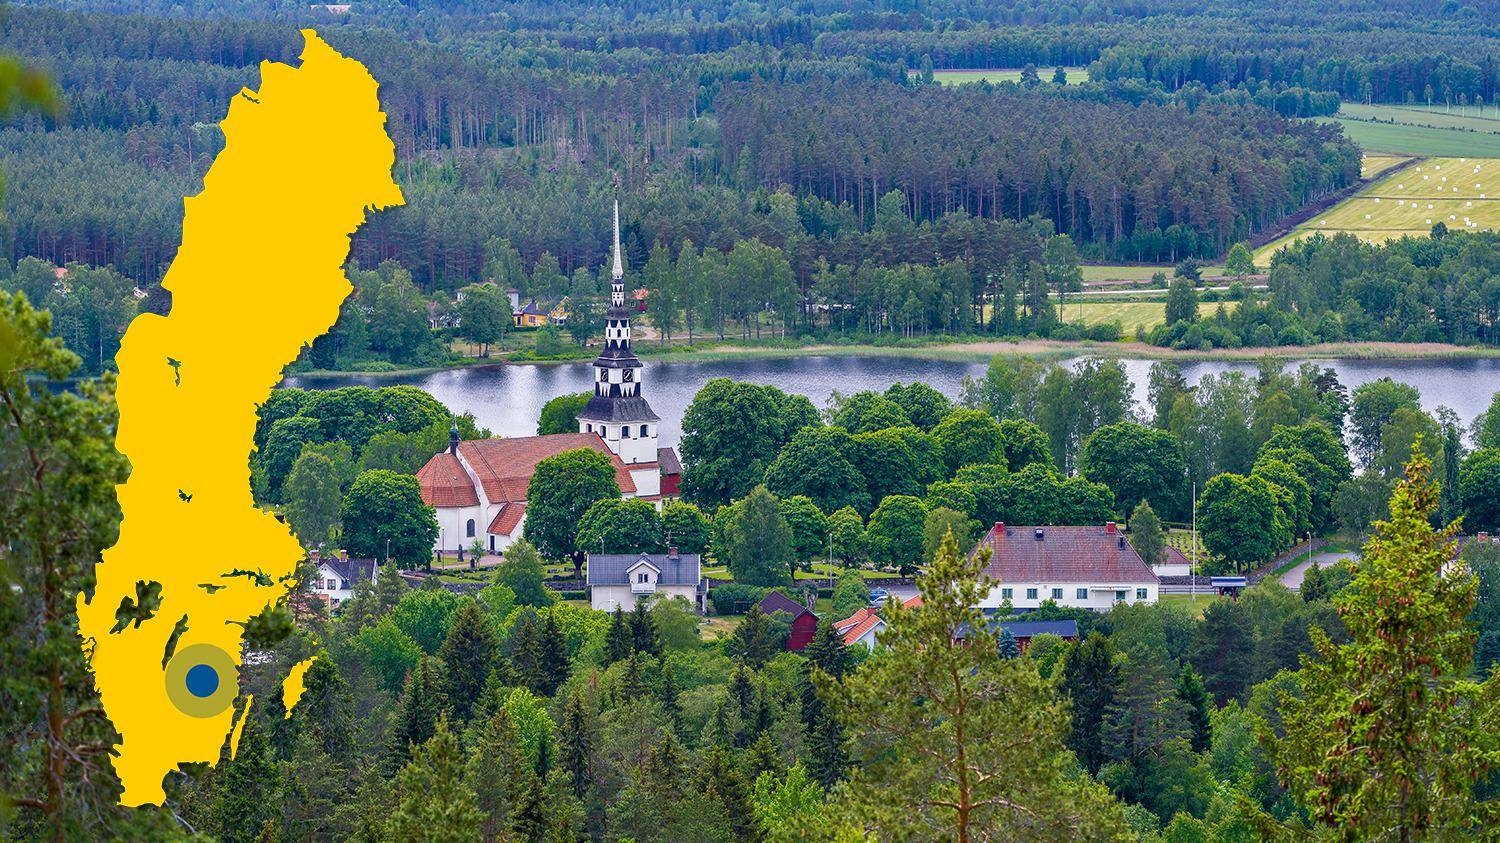 Een witte kerk en een paar huizen zijn omgeven door groen, velden en een meer. Er is een gele kaart van Zweden met een blauwe stip die Ingatorp markeert.